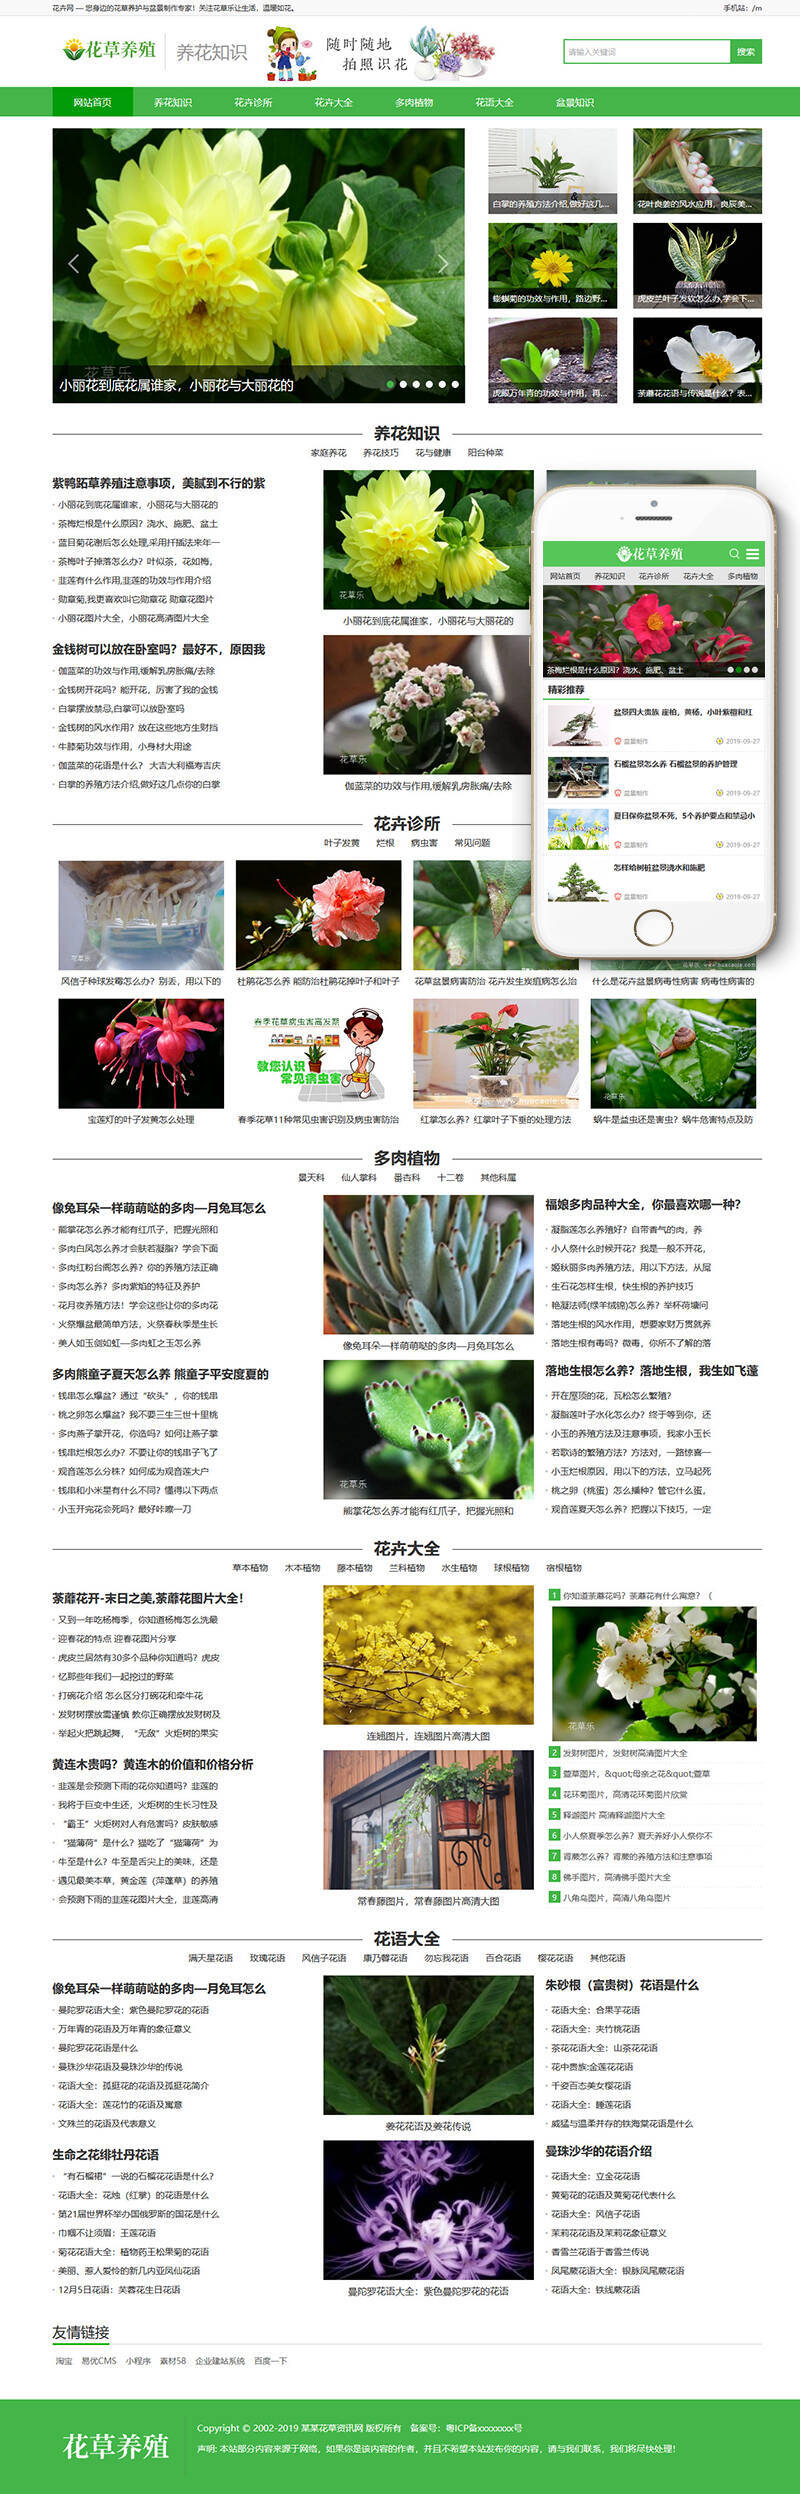 花卉养殖新闻资讯类Wordpress模板(带手机端)效果图